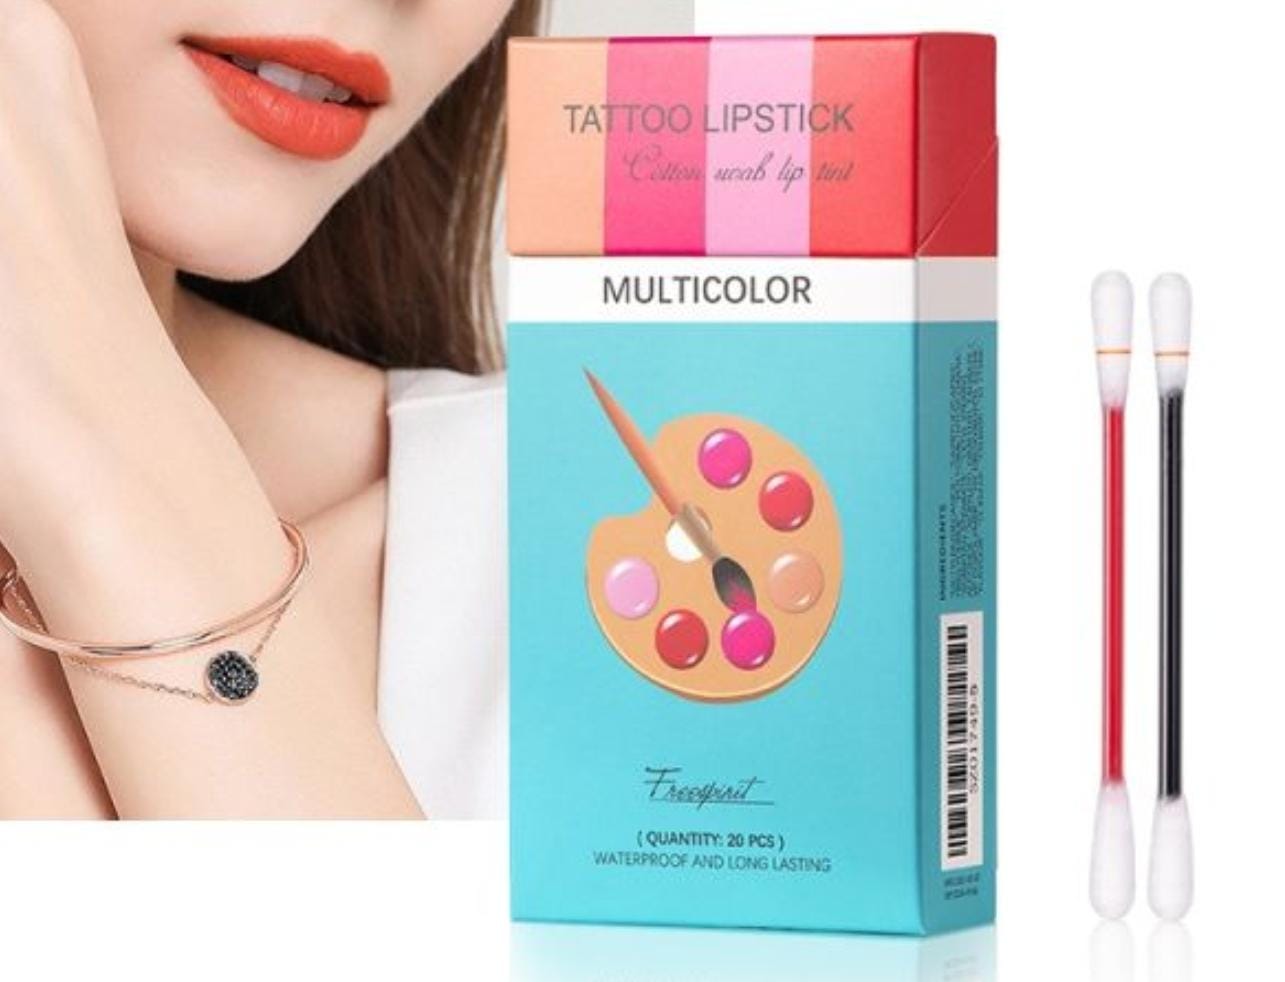 Multicolor Tattoo Lipstick